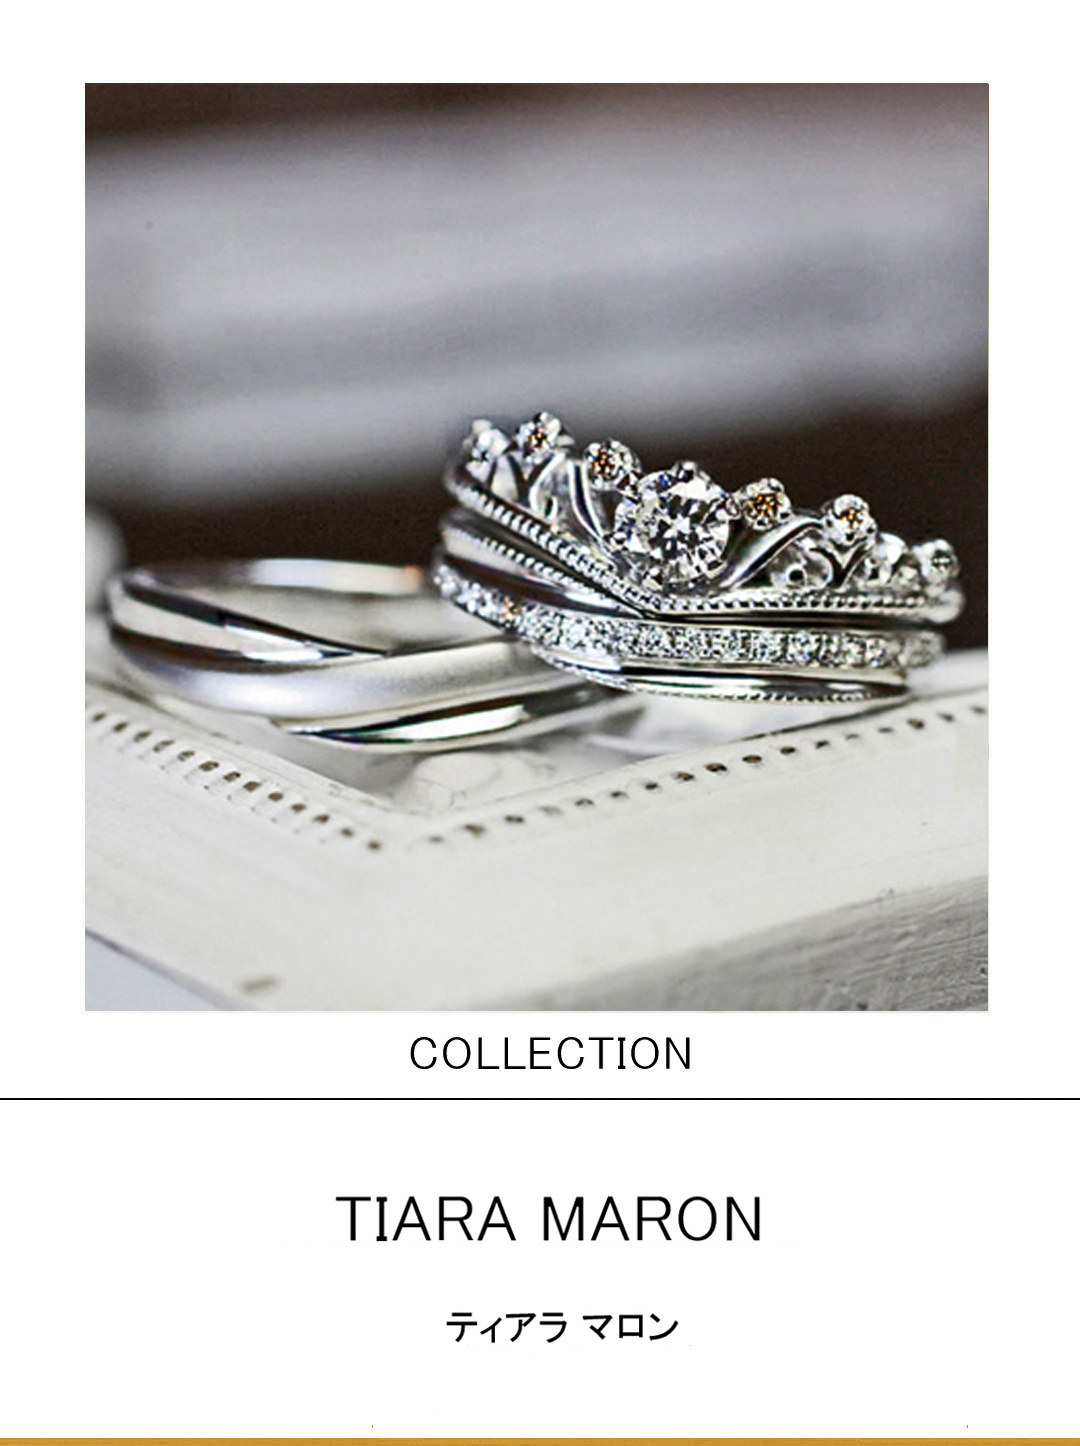 ブラウンダイヤ入りティアラデザインの婚約指輪と結婚指輪のセット